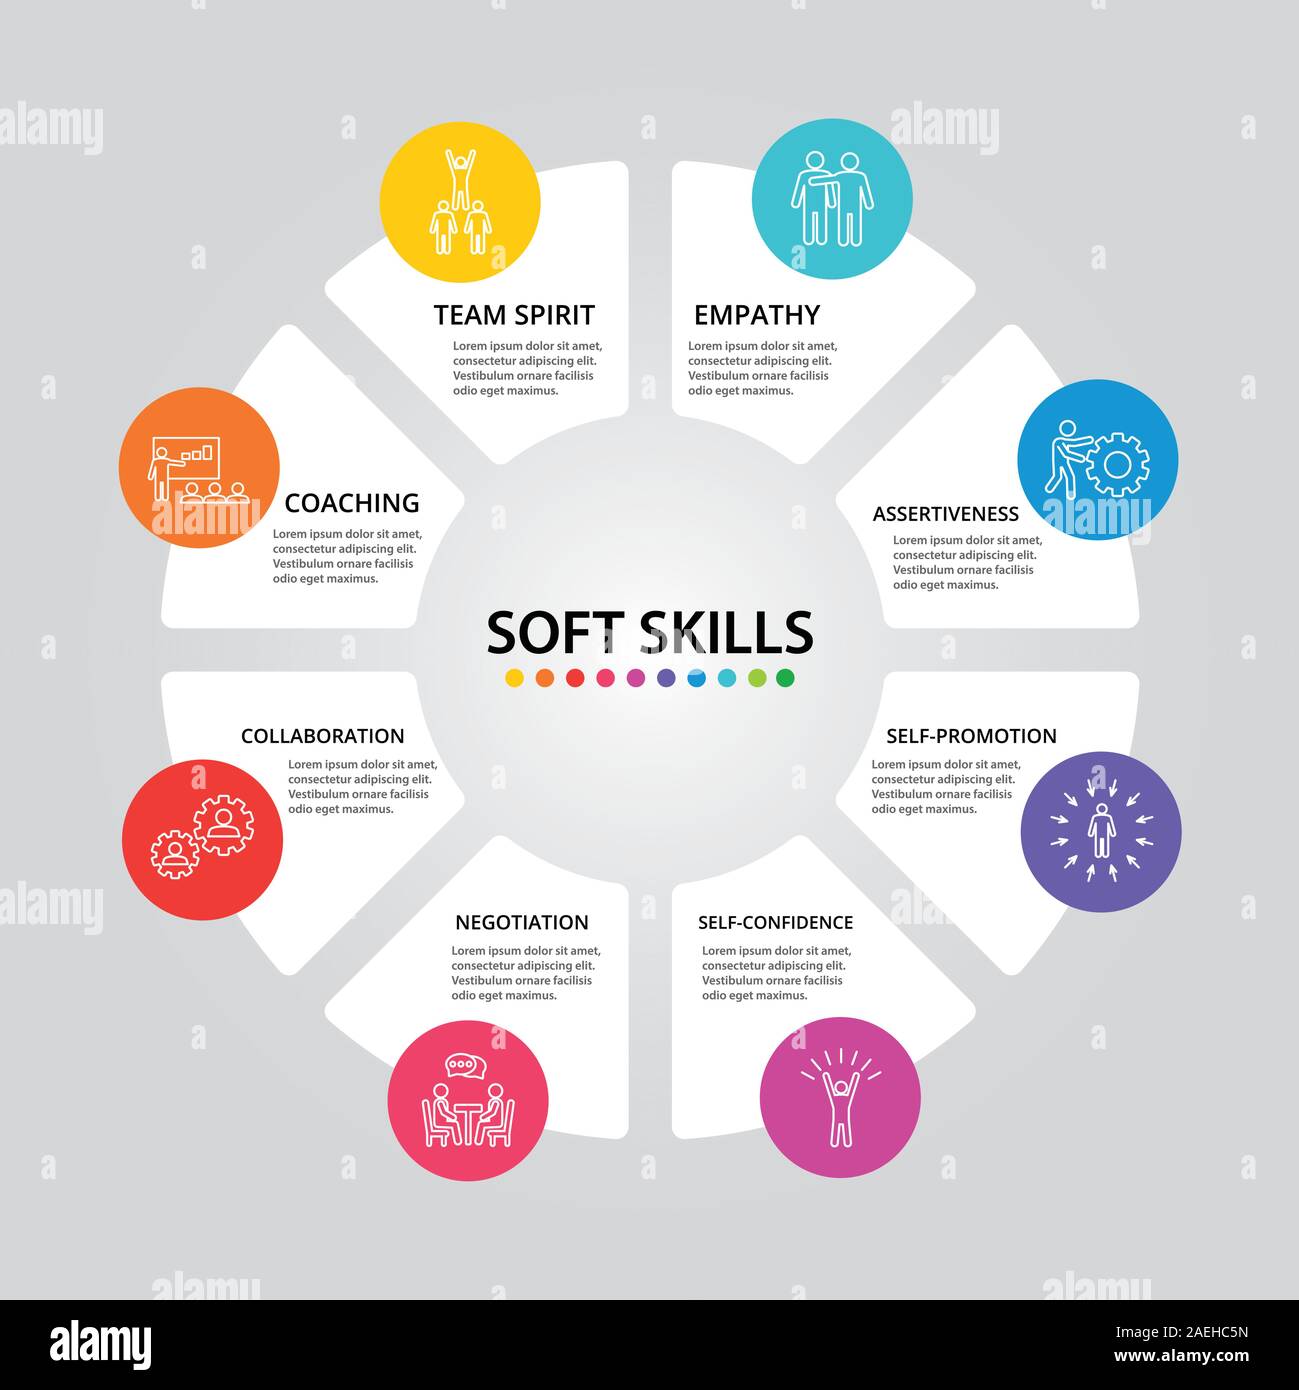 Soft Skills List